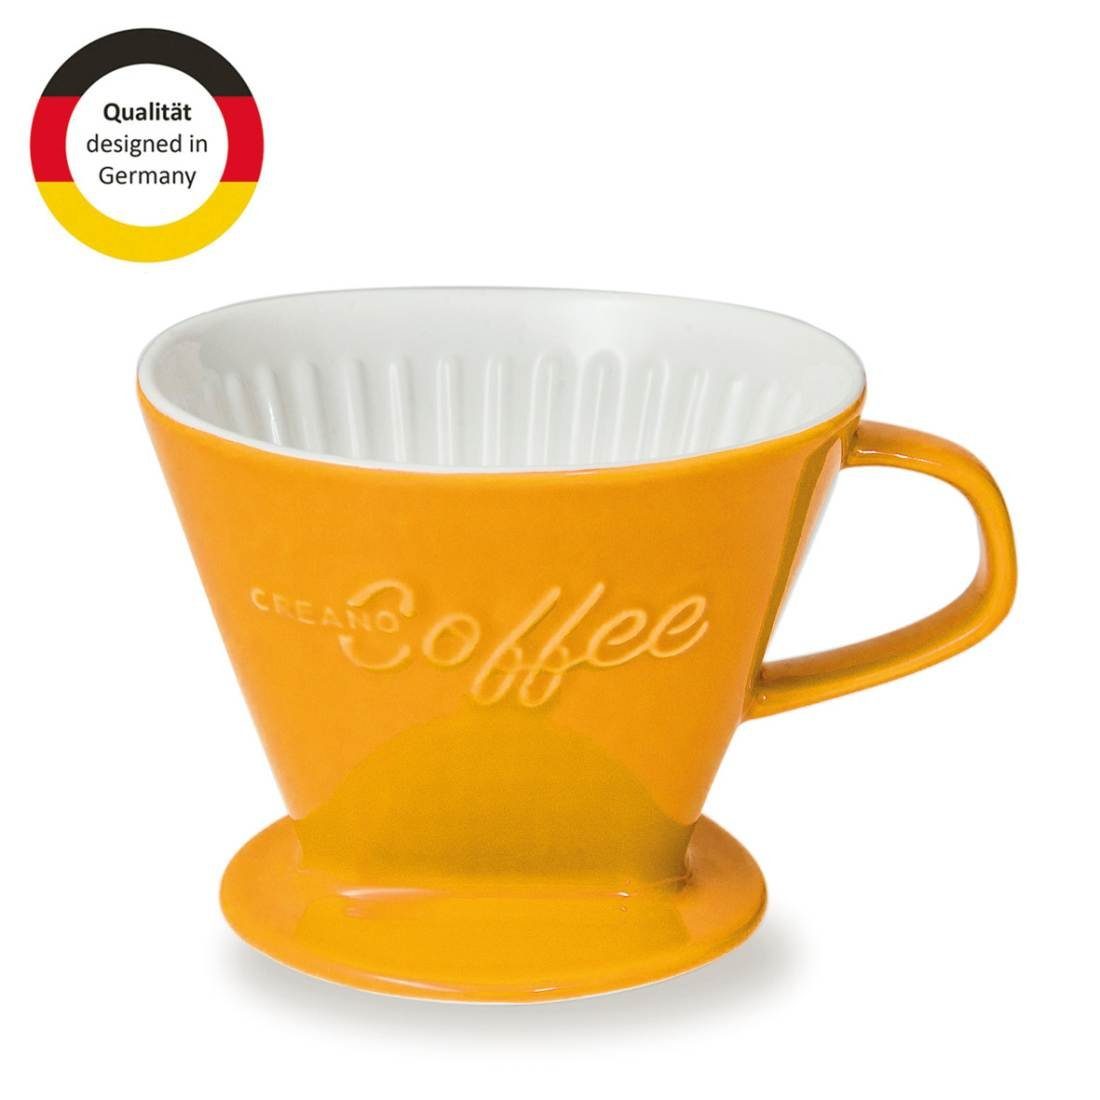 Creano French Press Kanne Creano Porzellan Kaffeefilter (Safrangelb), Filter Größe 4 für Filtert, Manuell 4